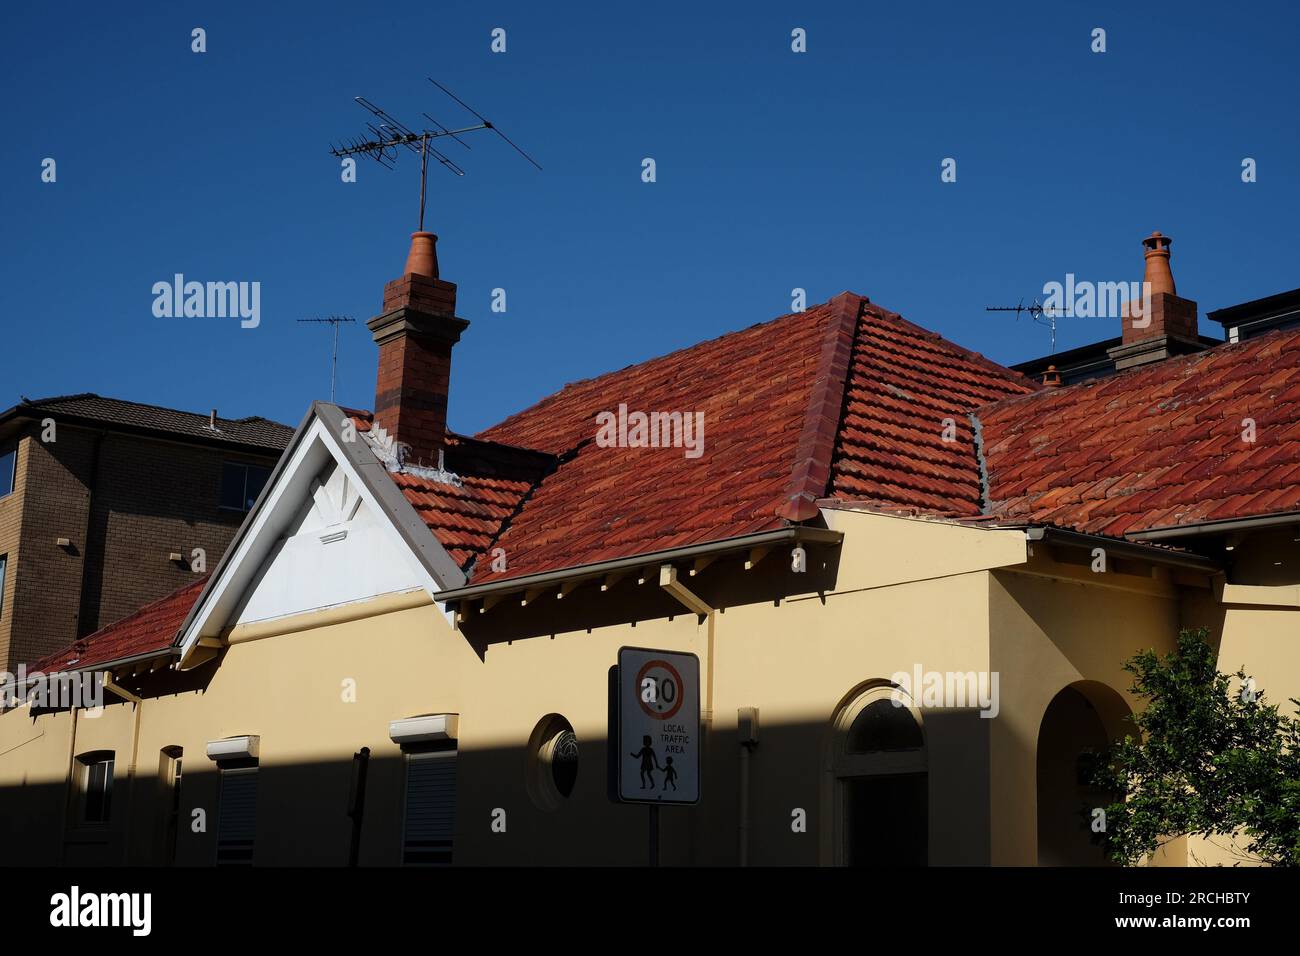 Il tetto a capanna con tegole rosse di una federazione su Bondi Road, parete laterale gialla in ombra profonda contro un cielo blu profondo Bondi, New South Wales Foto Stock